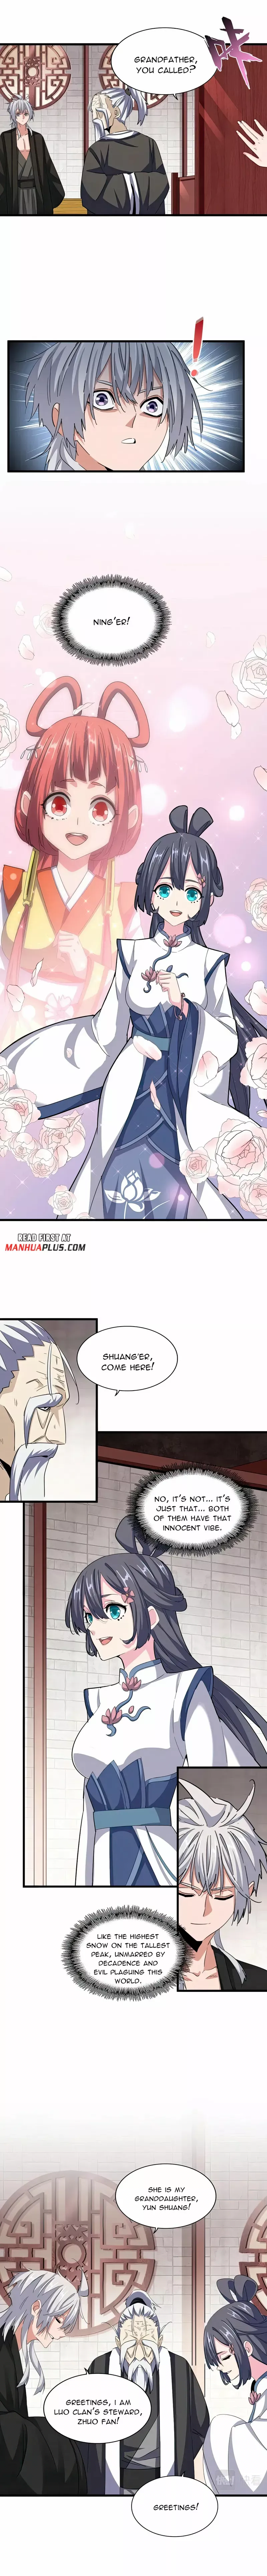 Magic Emperor Chapter 395 page 6 - Mangakakalot